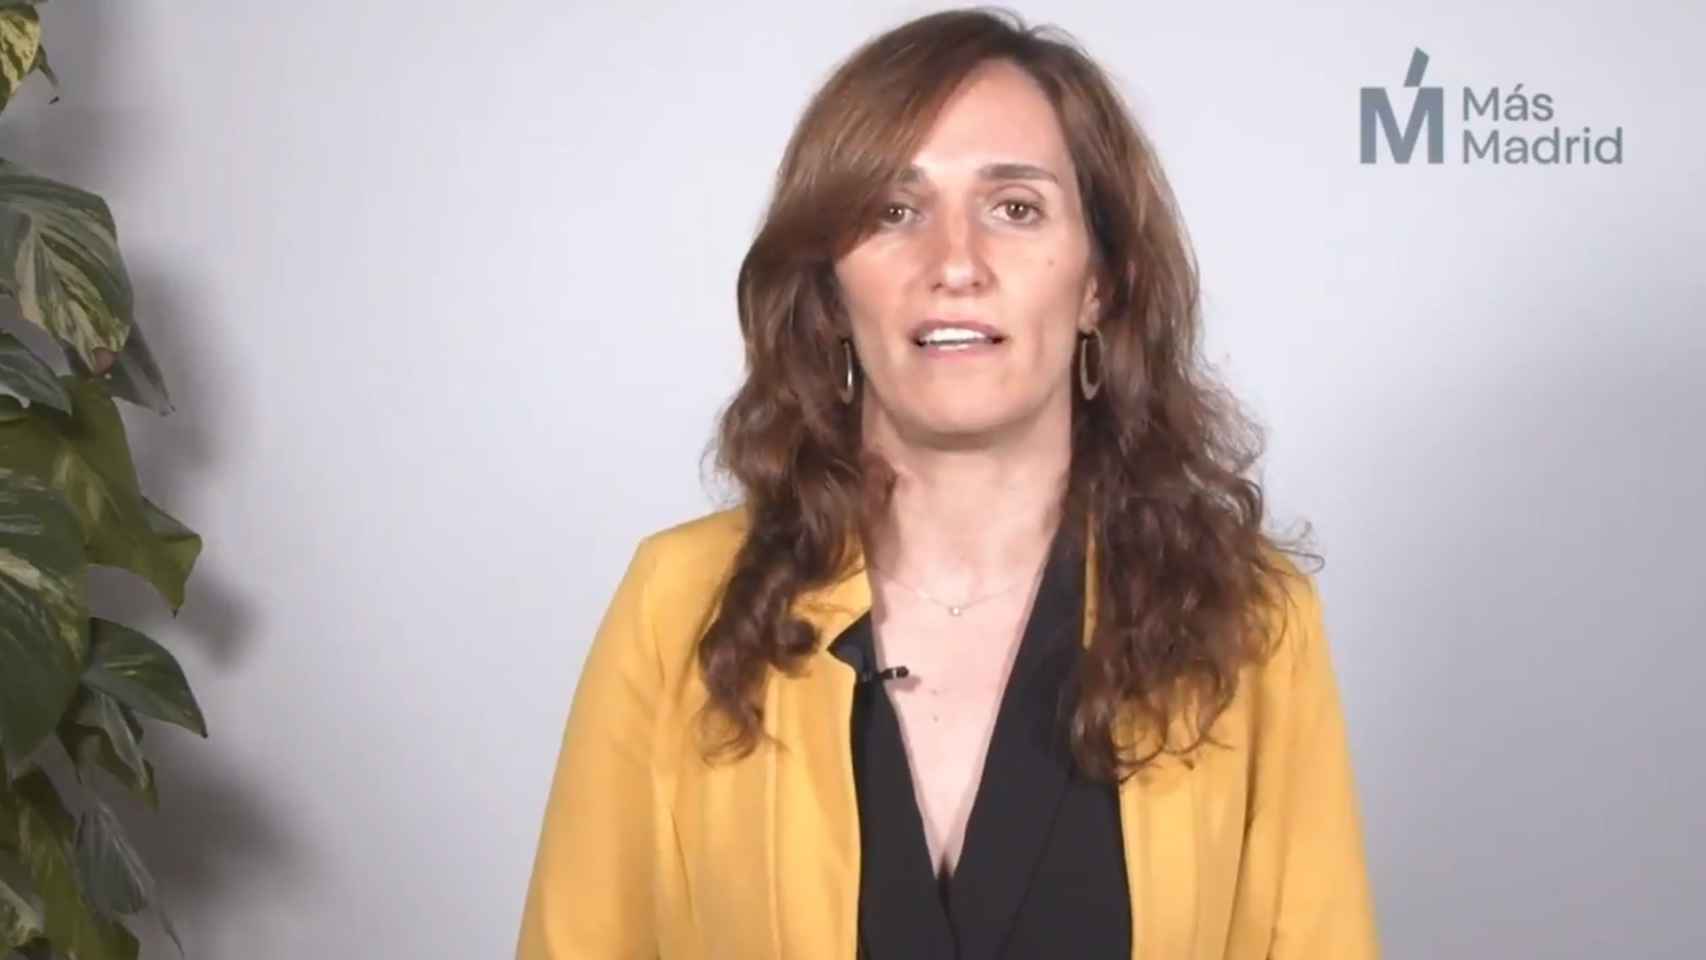 La candidata de Más Madrid a la Comunidad de Madrid, Mónica García.